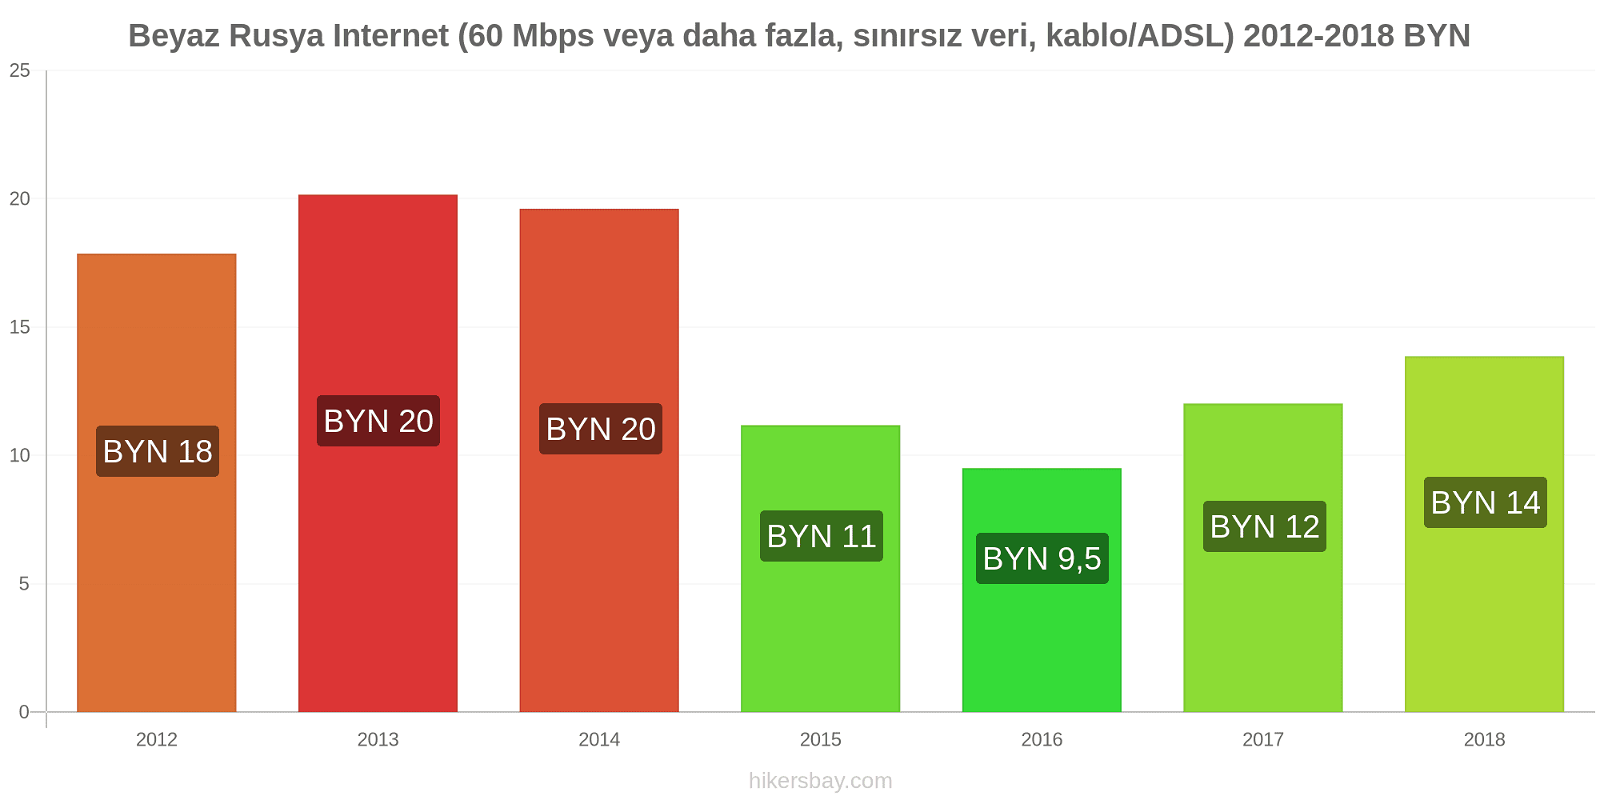 Beyaz Rusya fiyat değişiklikleri İnternet (60 Mbps veya daha fazla, sınırsız veri, kablo/ADSL) hikersbay.com